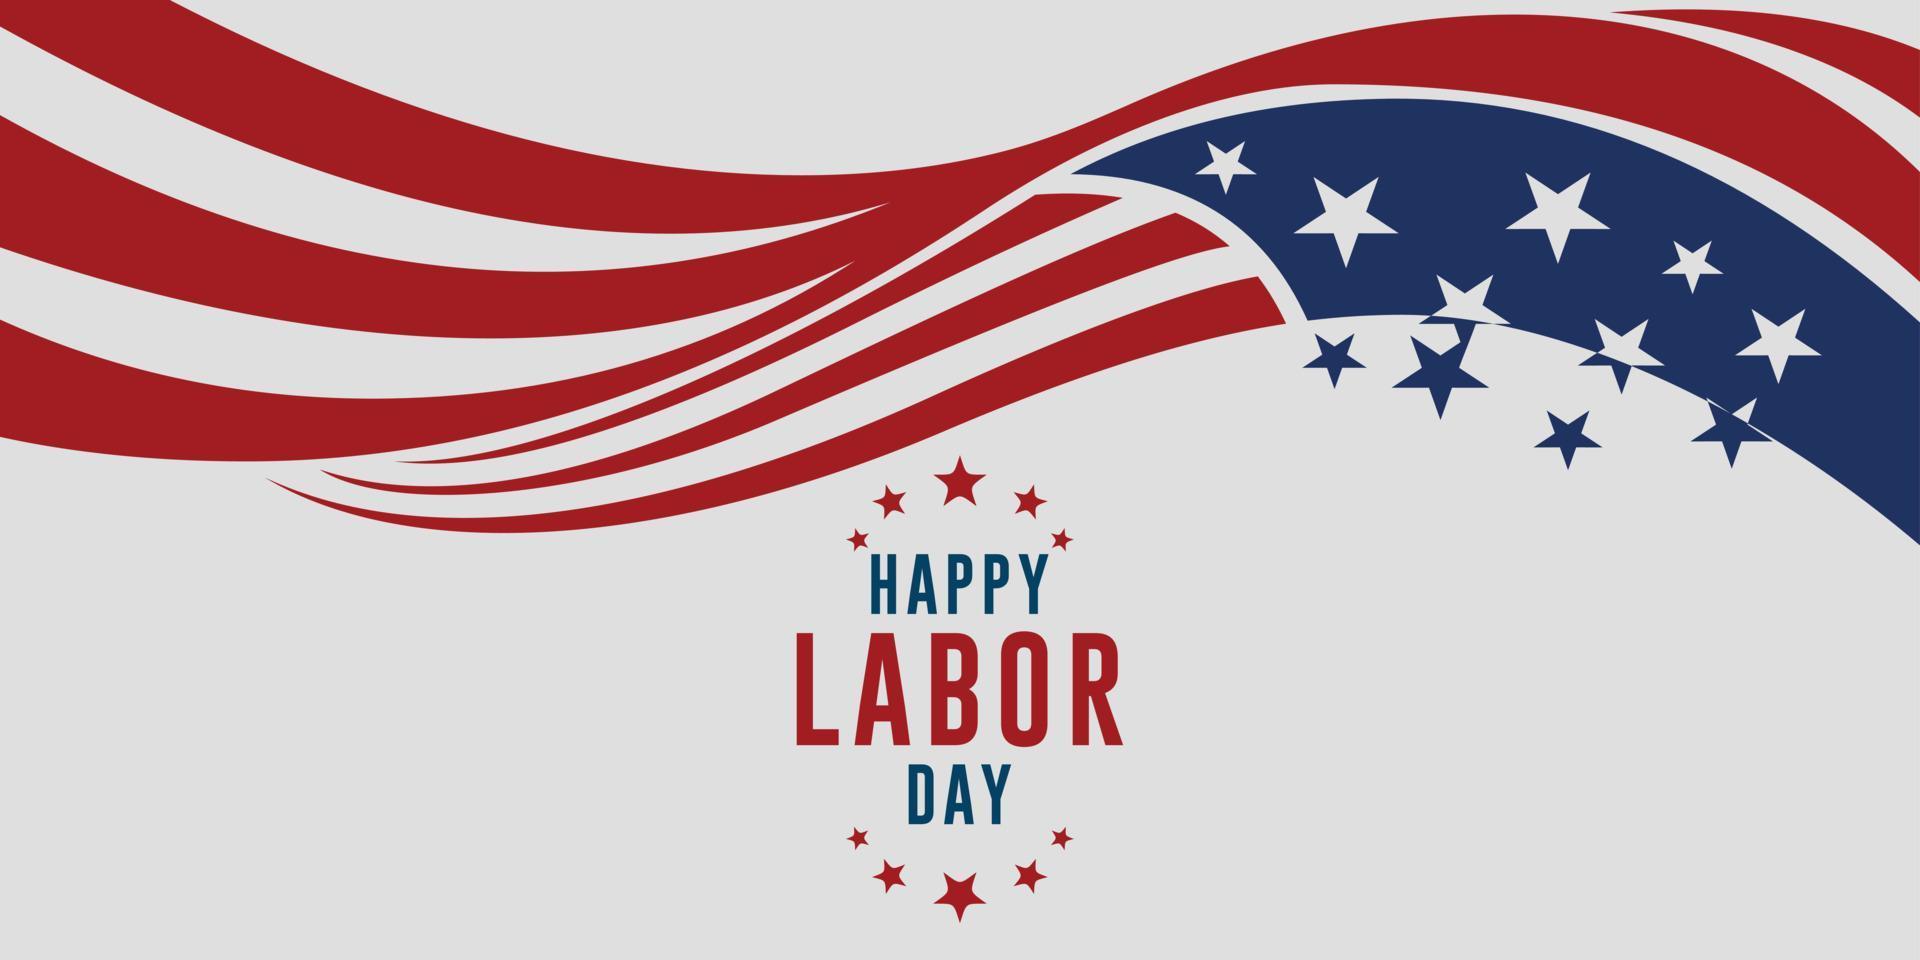 Happy Labor Day Vektor-Grußkarte oder Einladungskarte. Illustration eines amerikanischen Nationalfeiertags mit einer US-Flagge. vektor